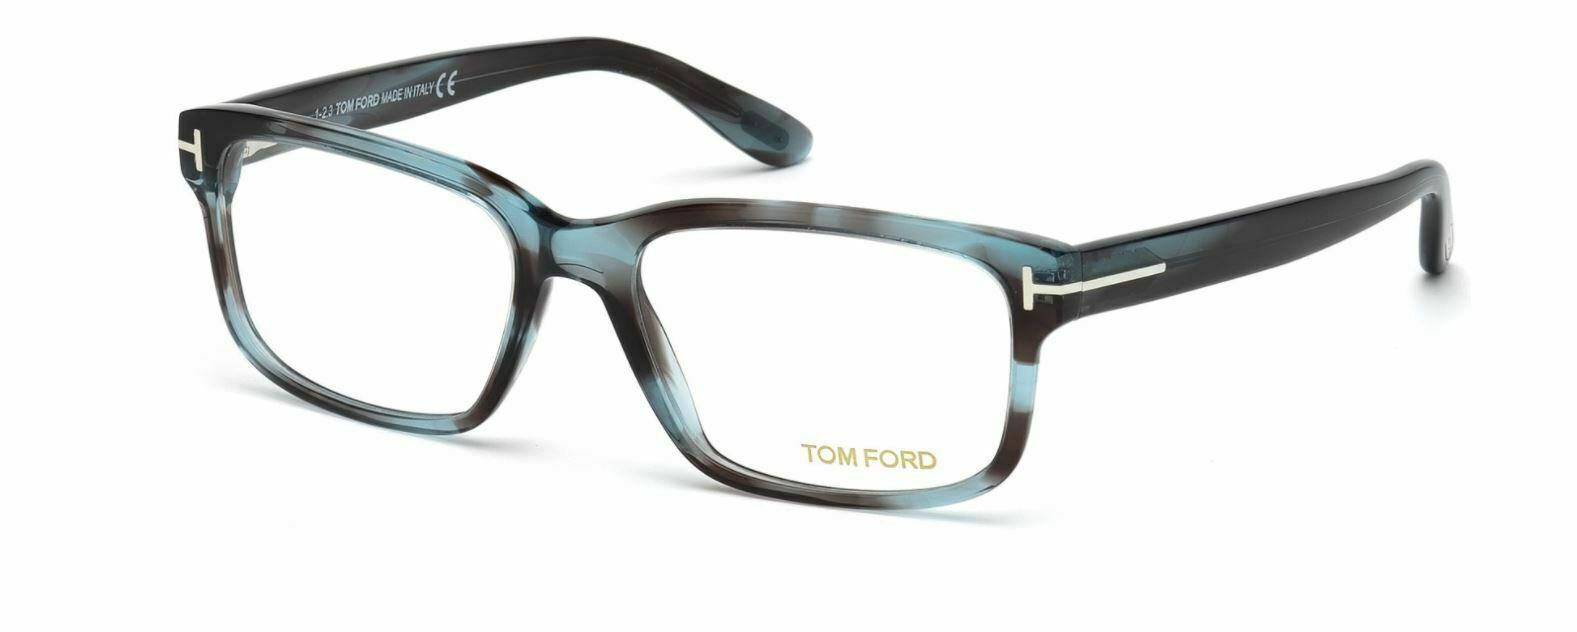 Tom Ford FT5313 086 Light Blue Eyeglasses